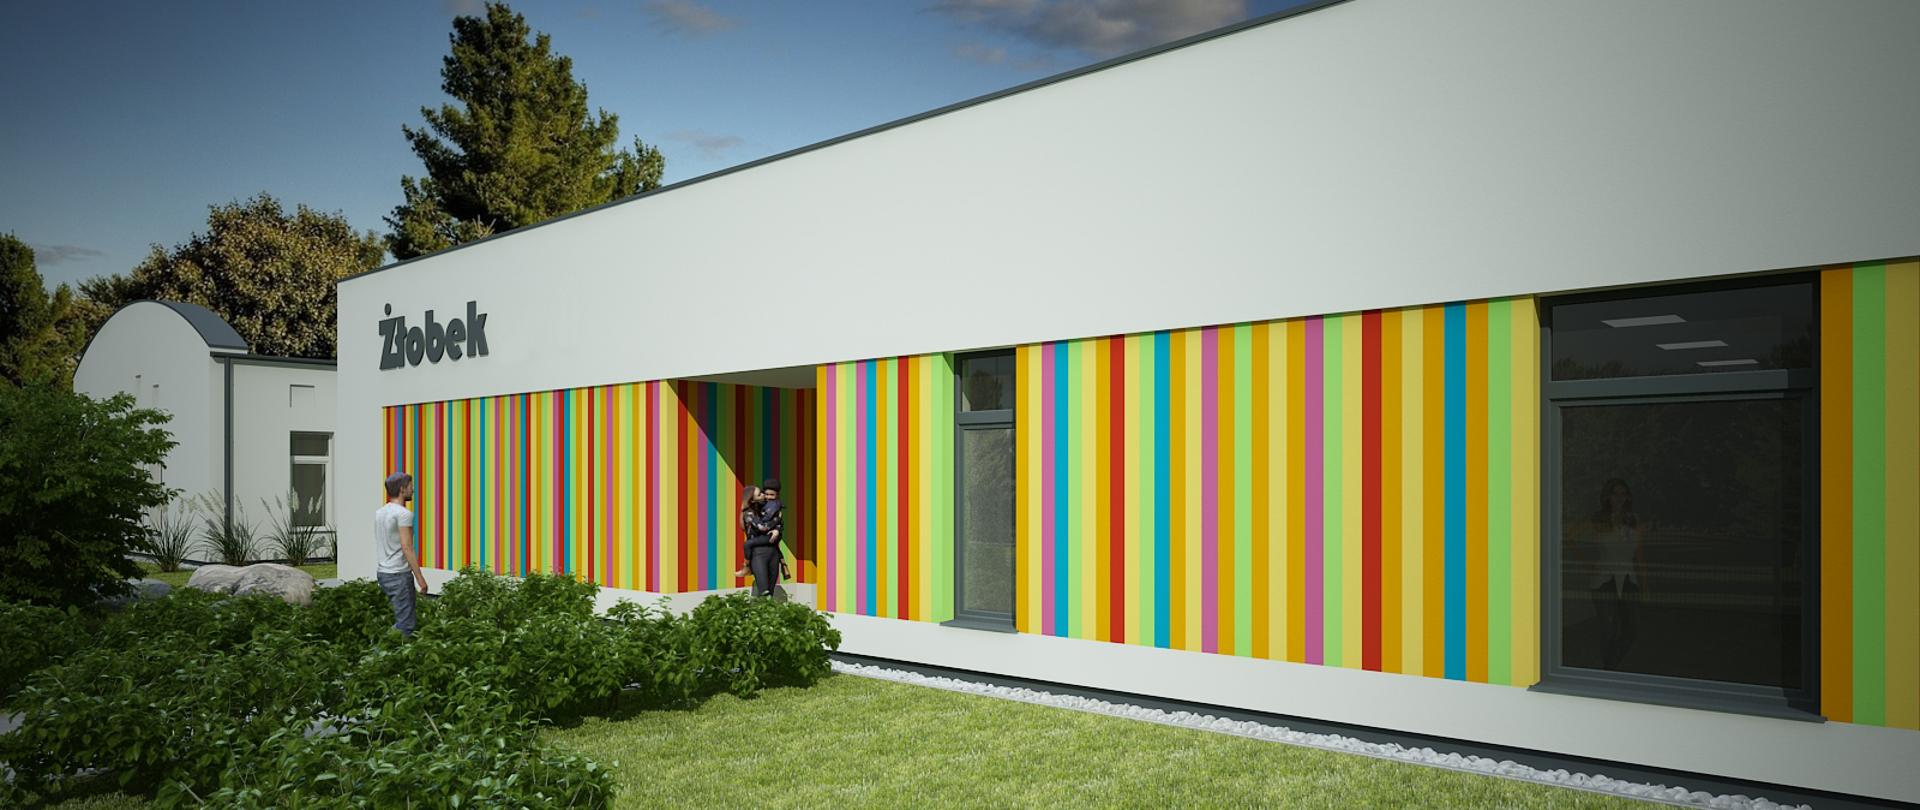 Wizualizacja nowego budynku żłobka, parterowy budynek w pionowe kolorowe pasy, na pierwszym planie trawnik z krzewami